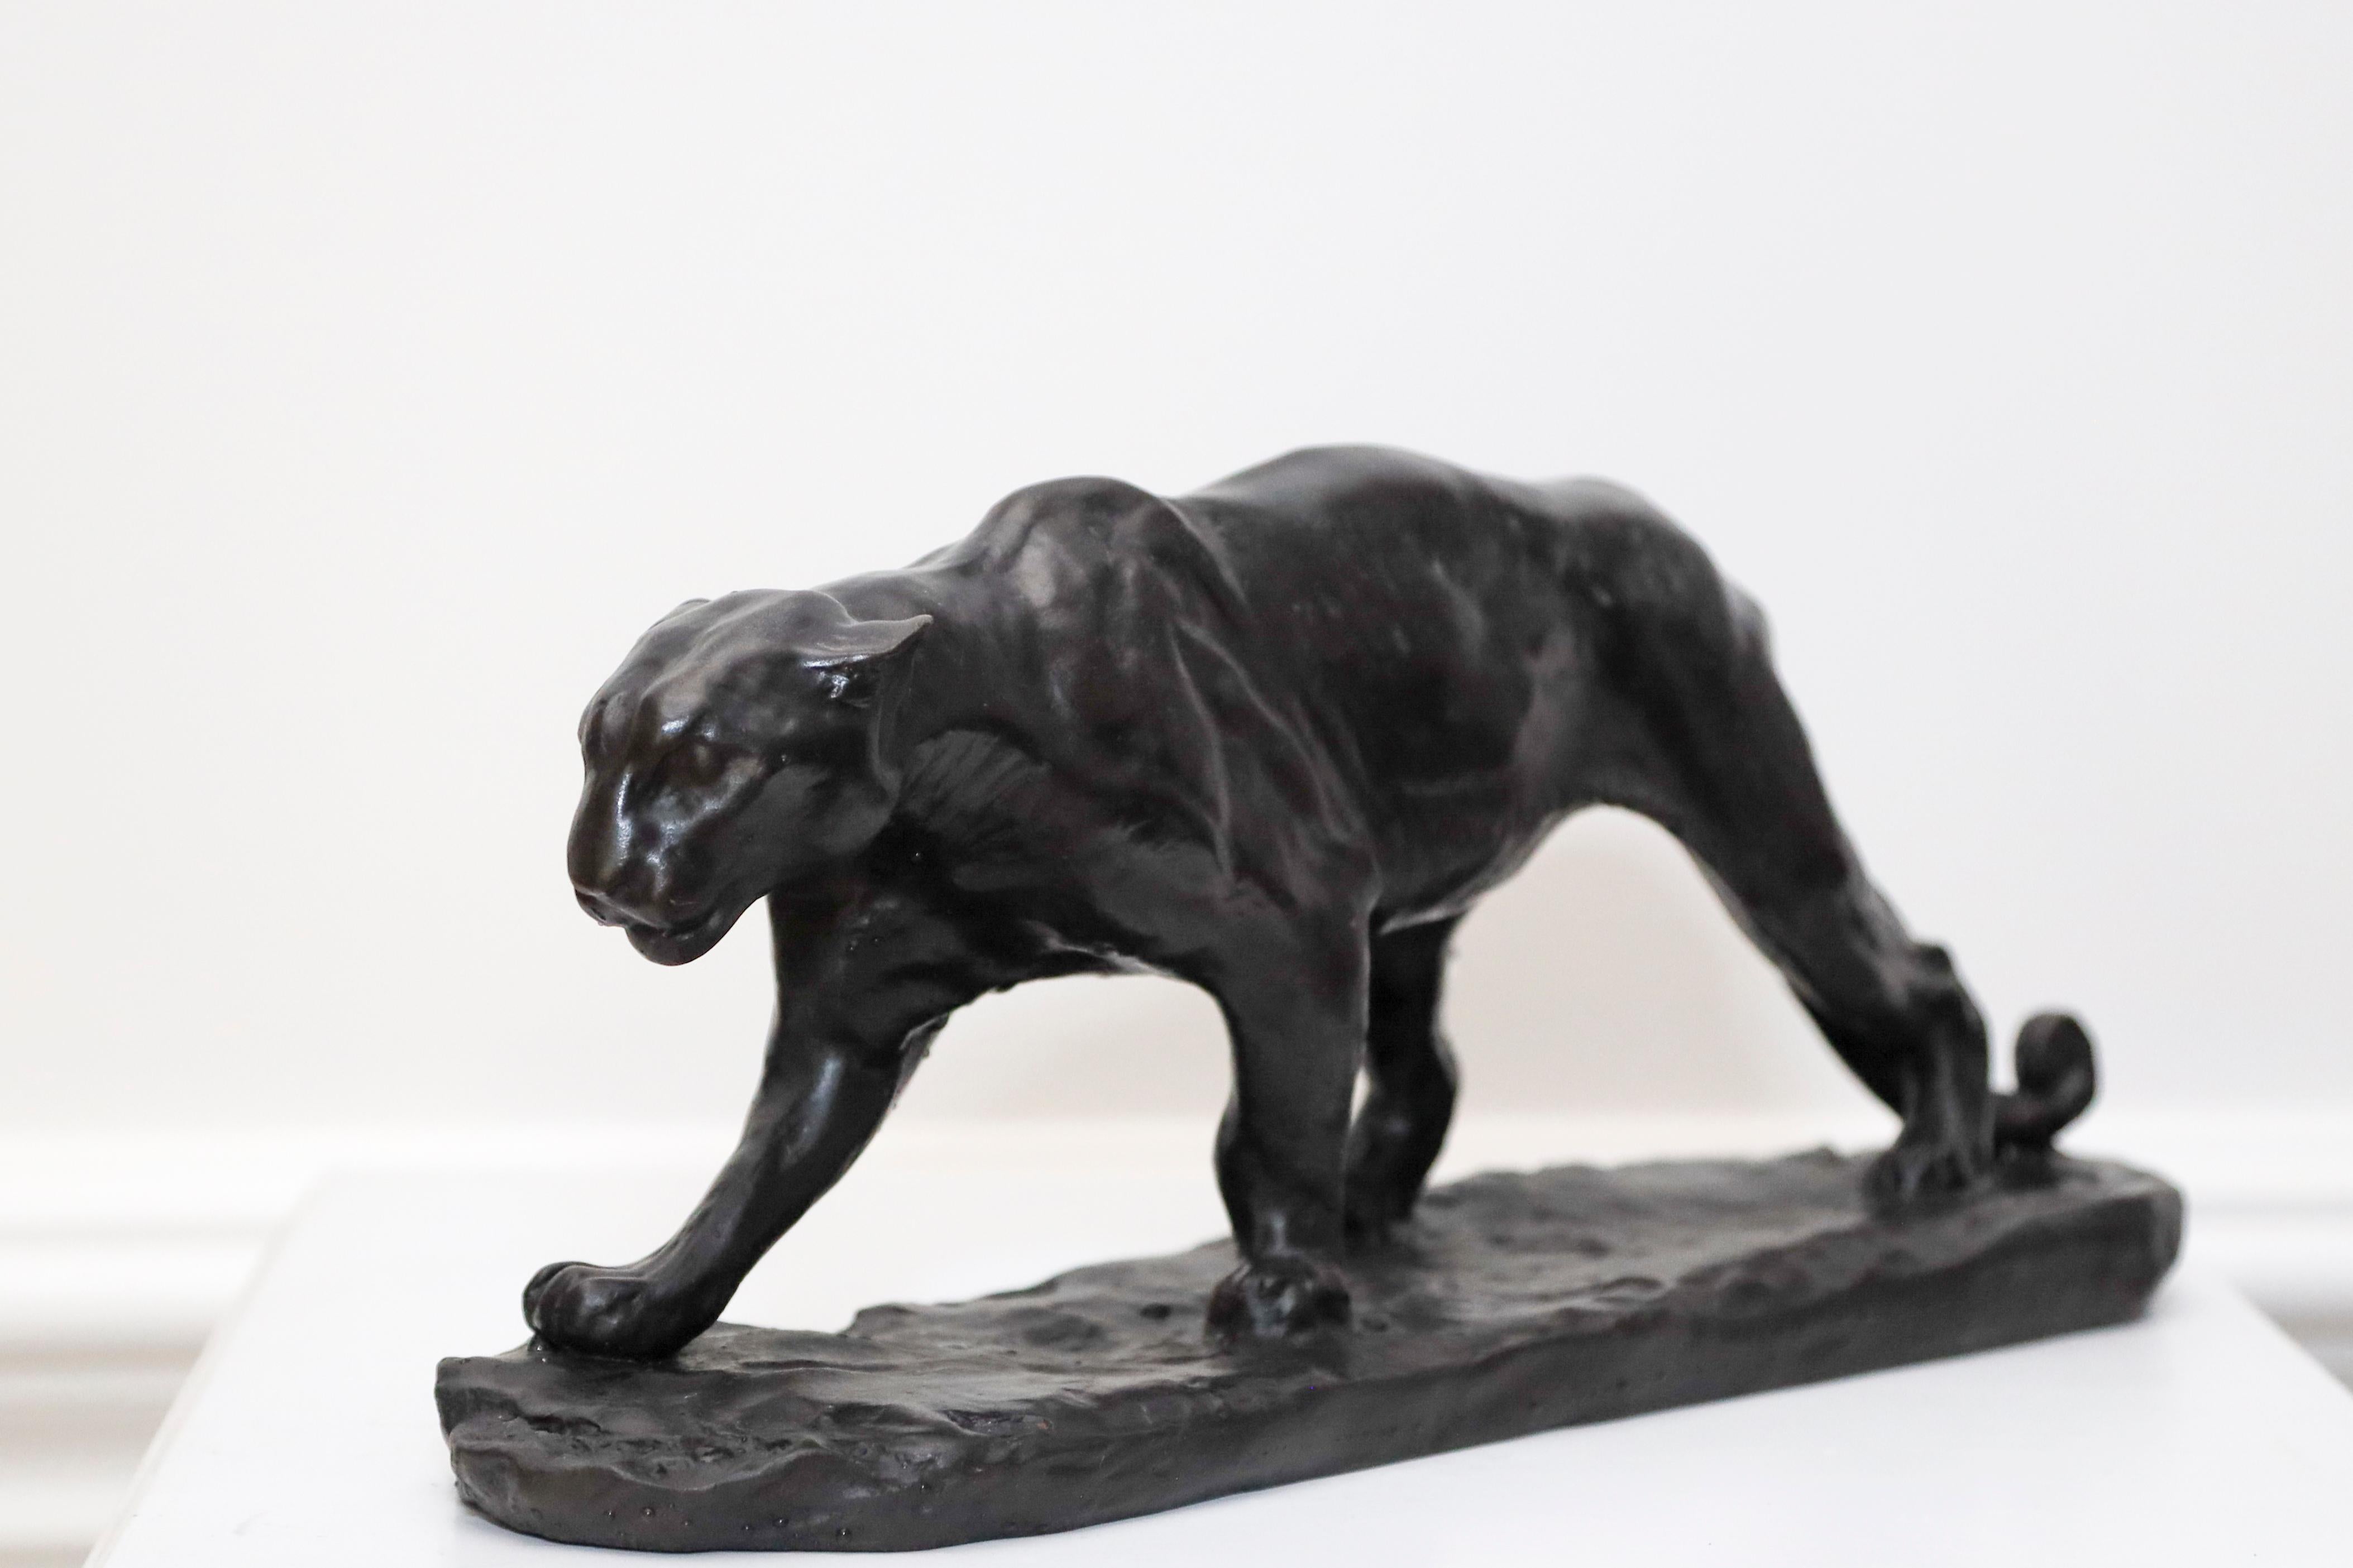 Walking Puma - American Modern Sculpture by Charles Rumsey